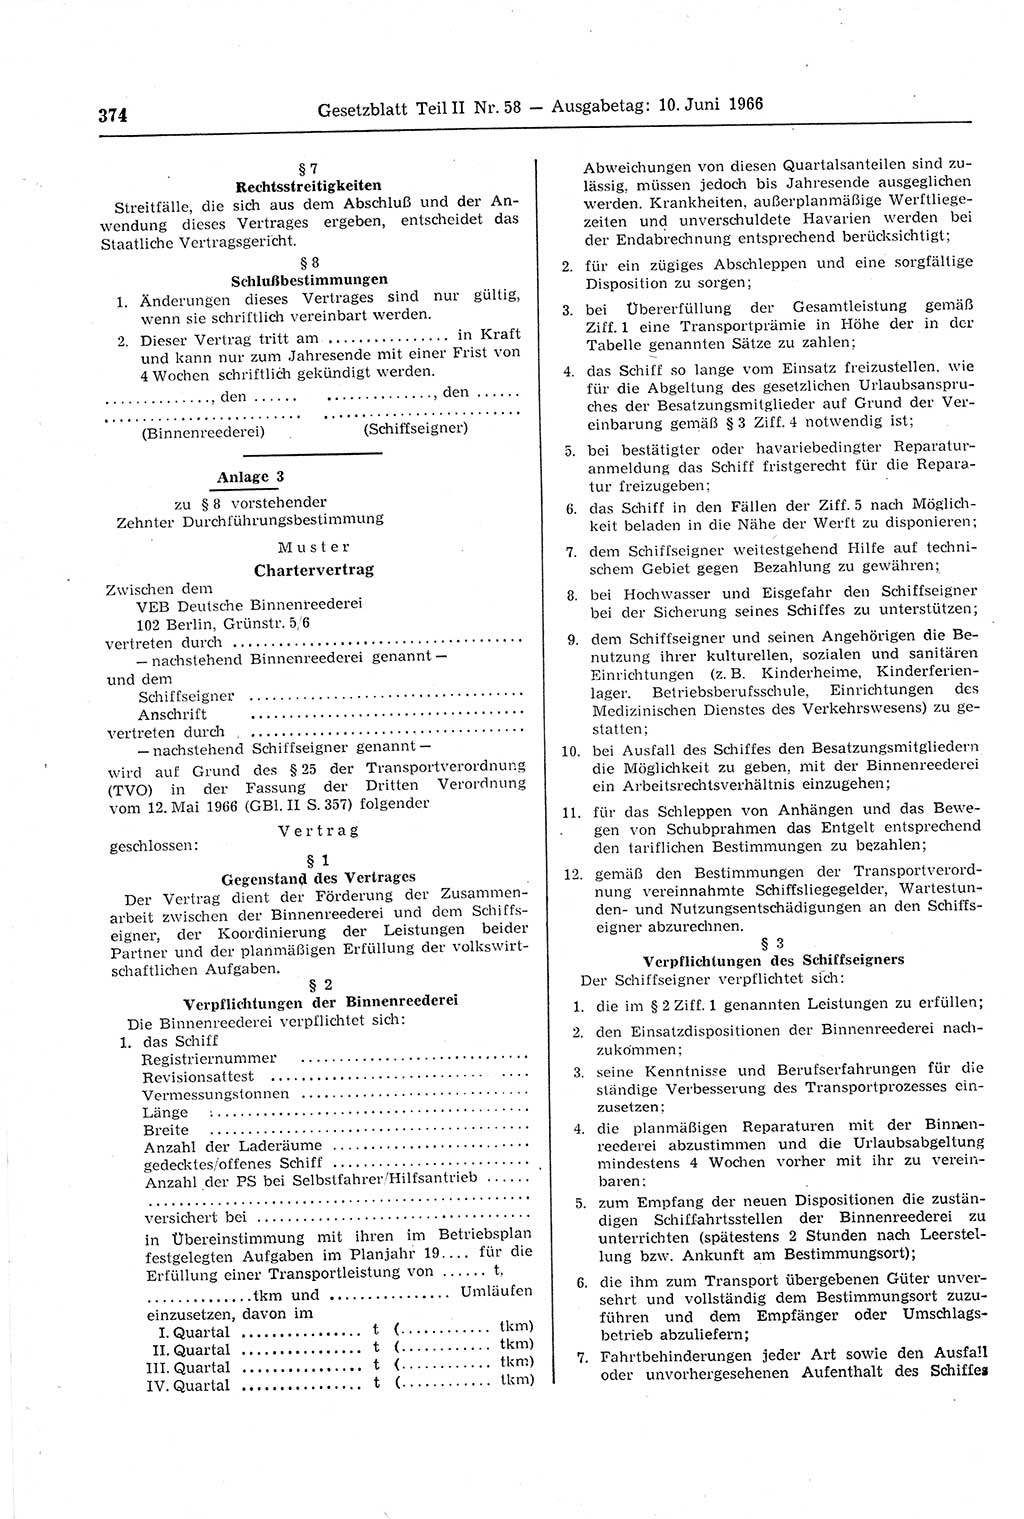 Gesetzblatt (GBl.) der Deutschen Demokratischen Republik (DDR) Teil ⅠⅠ 1966, Seite 374 (GBl. DDR ⅠⅠ 1966, S. 374)